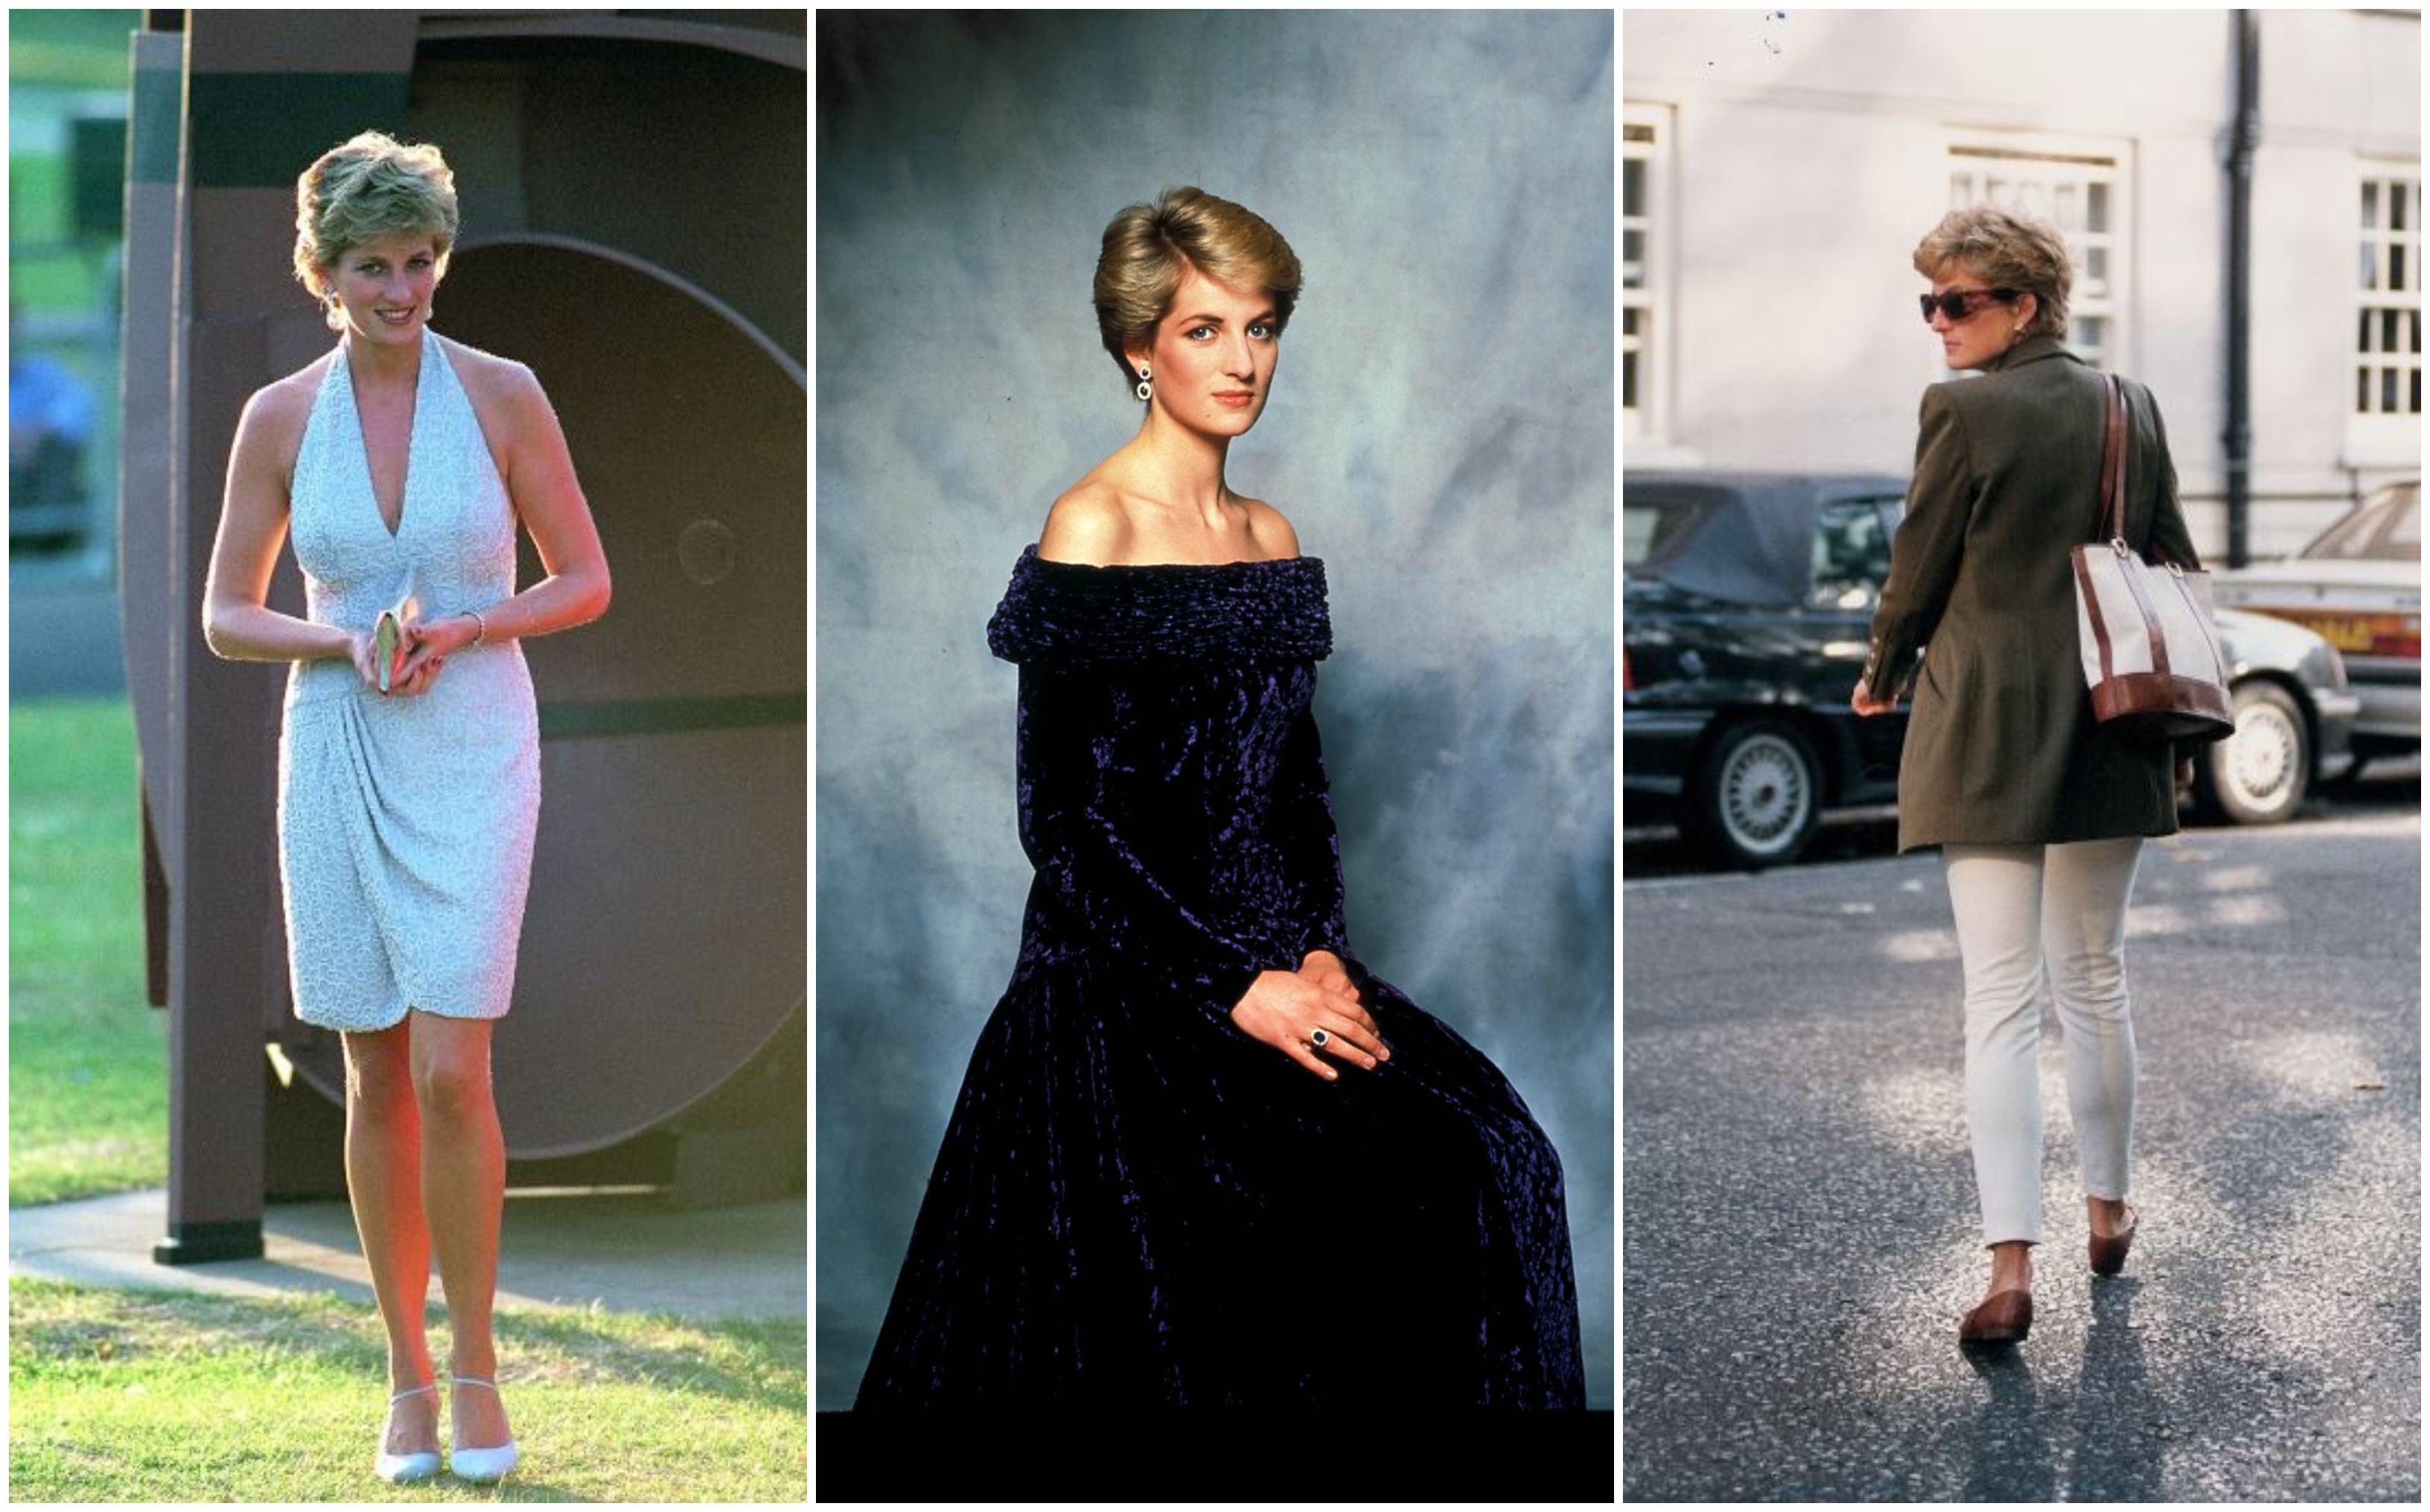 Evolucija stila: Kako se princeza Diana mijenjala kroz godine - Žena.hr